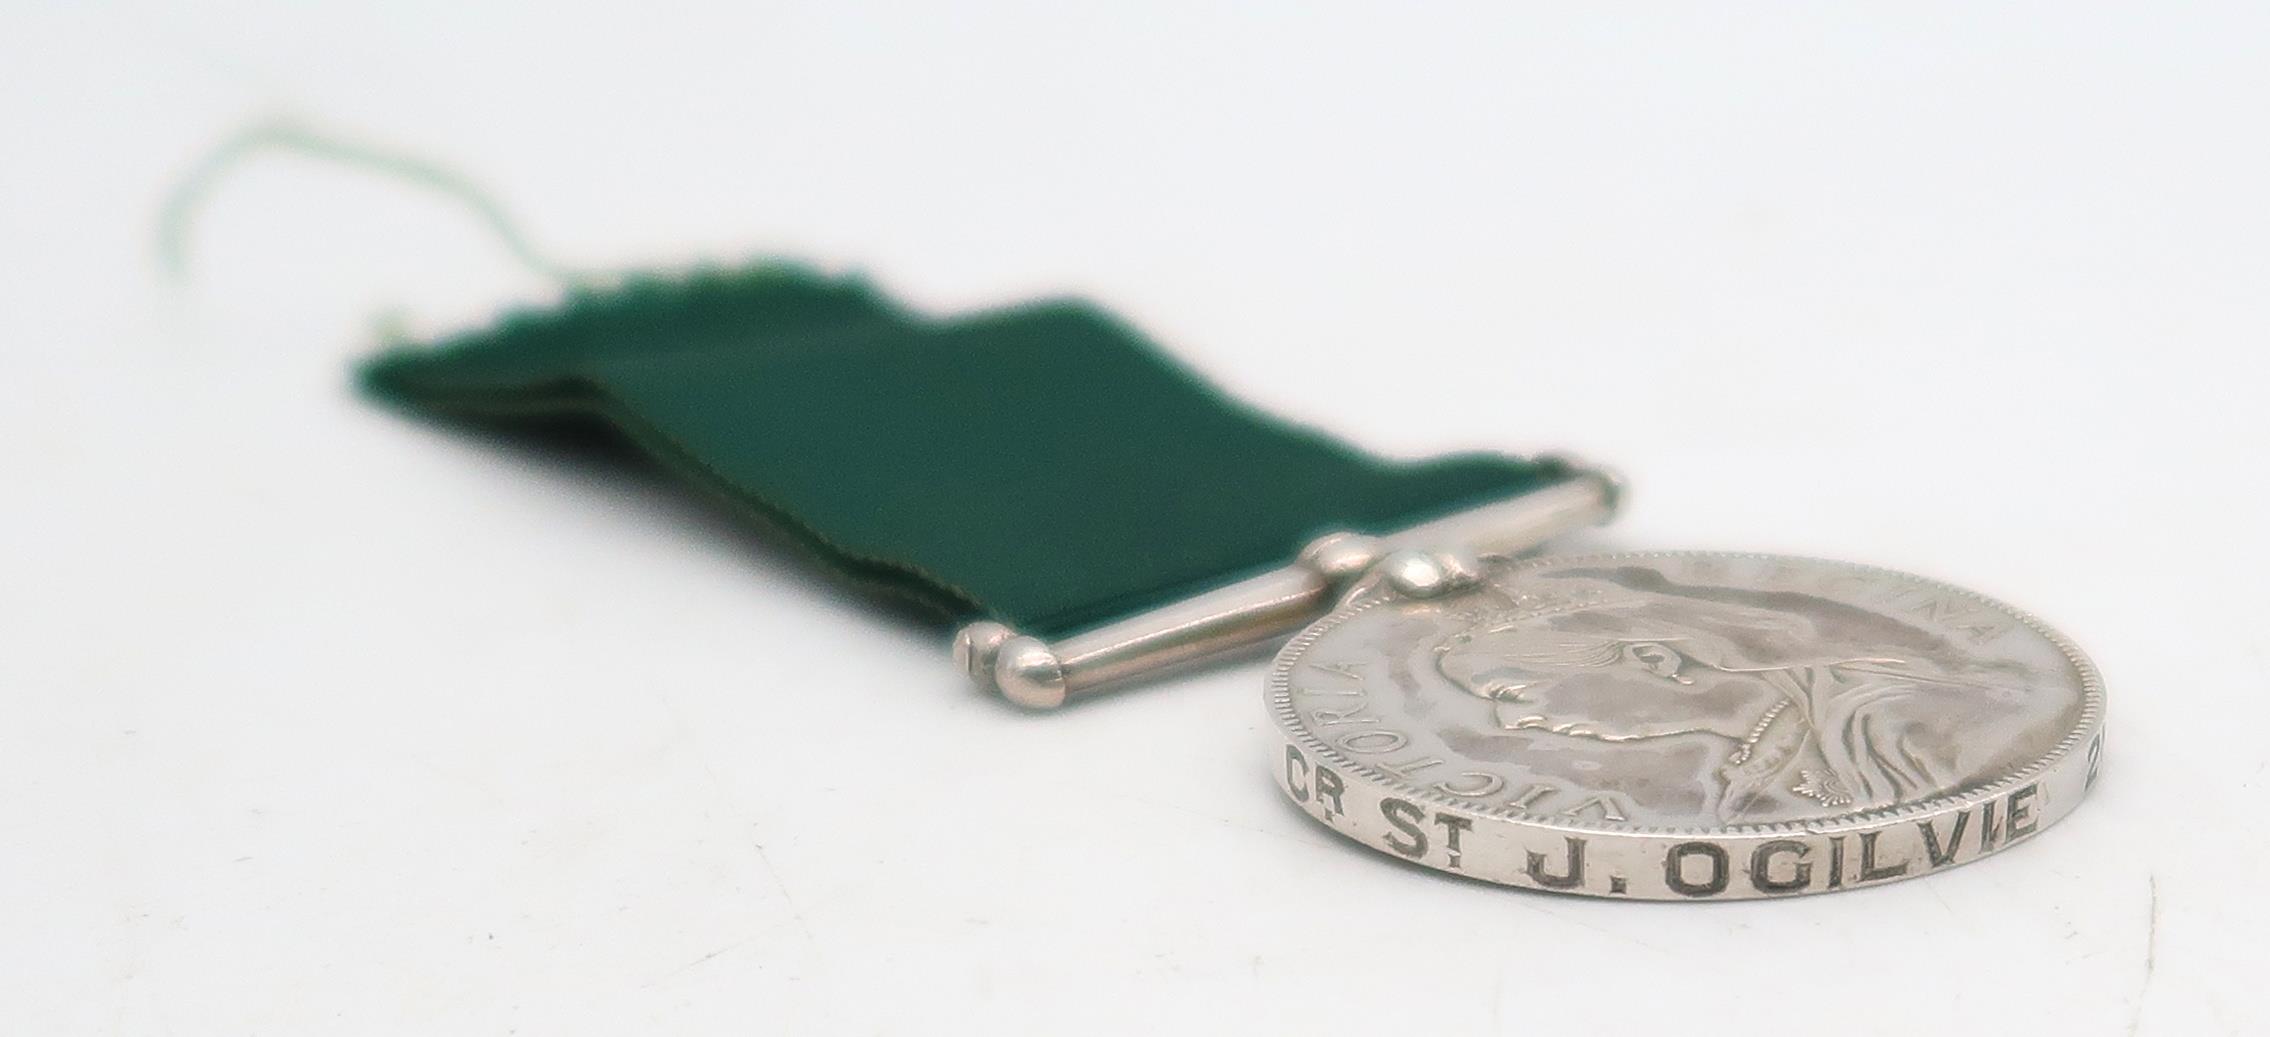 A Victorian Volunteer Long Service Medal awarded to Cr. St. J. Ogilvie, 2nd Volunteer Battalion, - Image 2 of 3